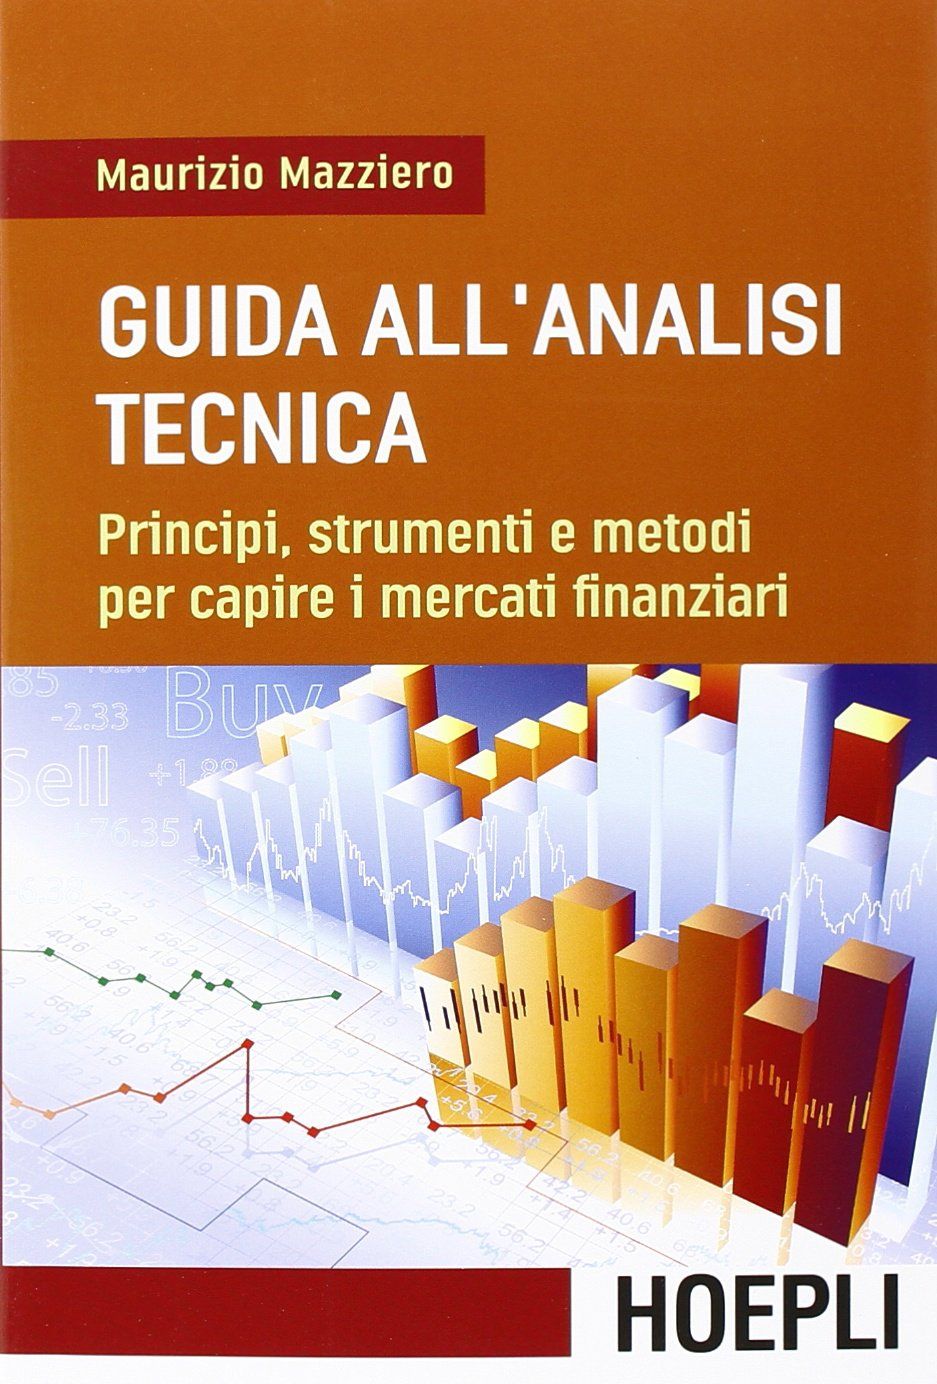 Guida all’analisi tecnica, scritto dal trader italiano Maurizio Mazziero